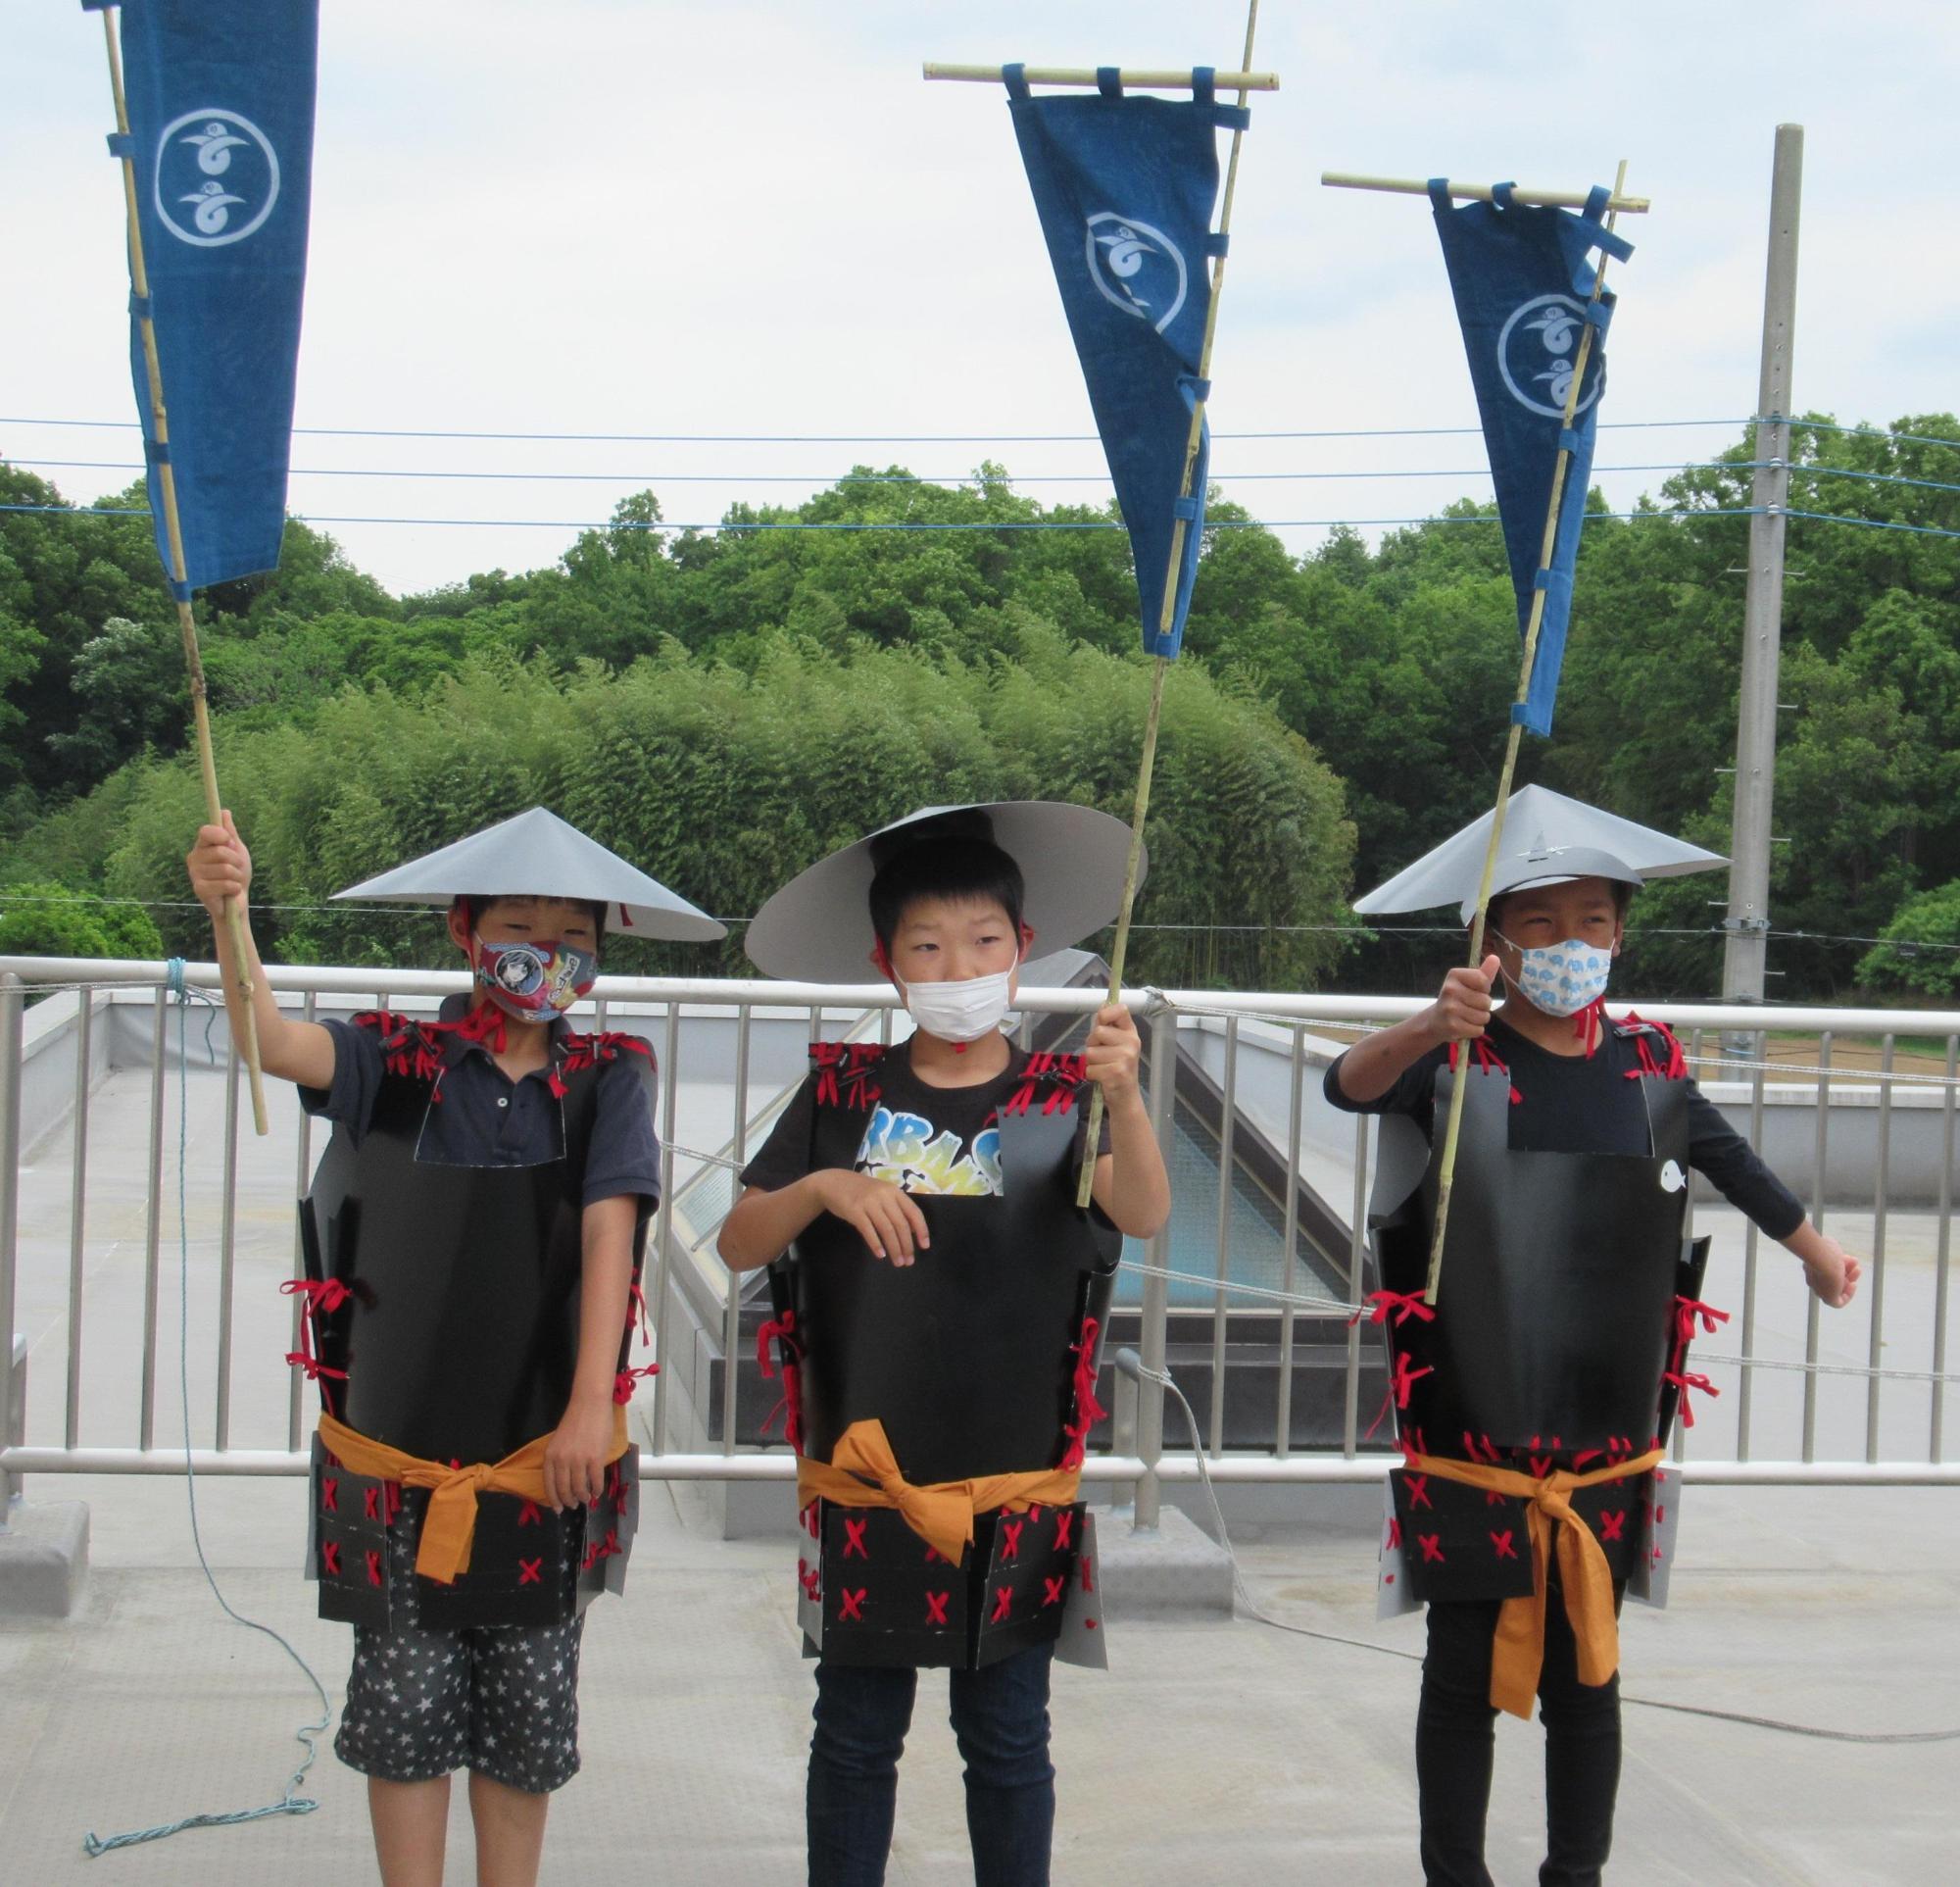 のぼり旗を持ち笠を頭にかぶり、手作りの甲冑を着た小学生3人が並んで立っている写真